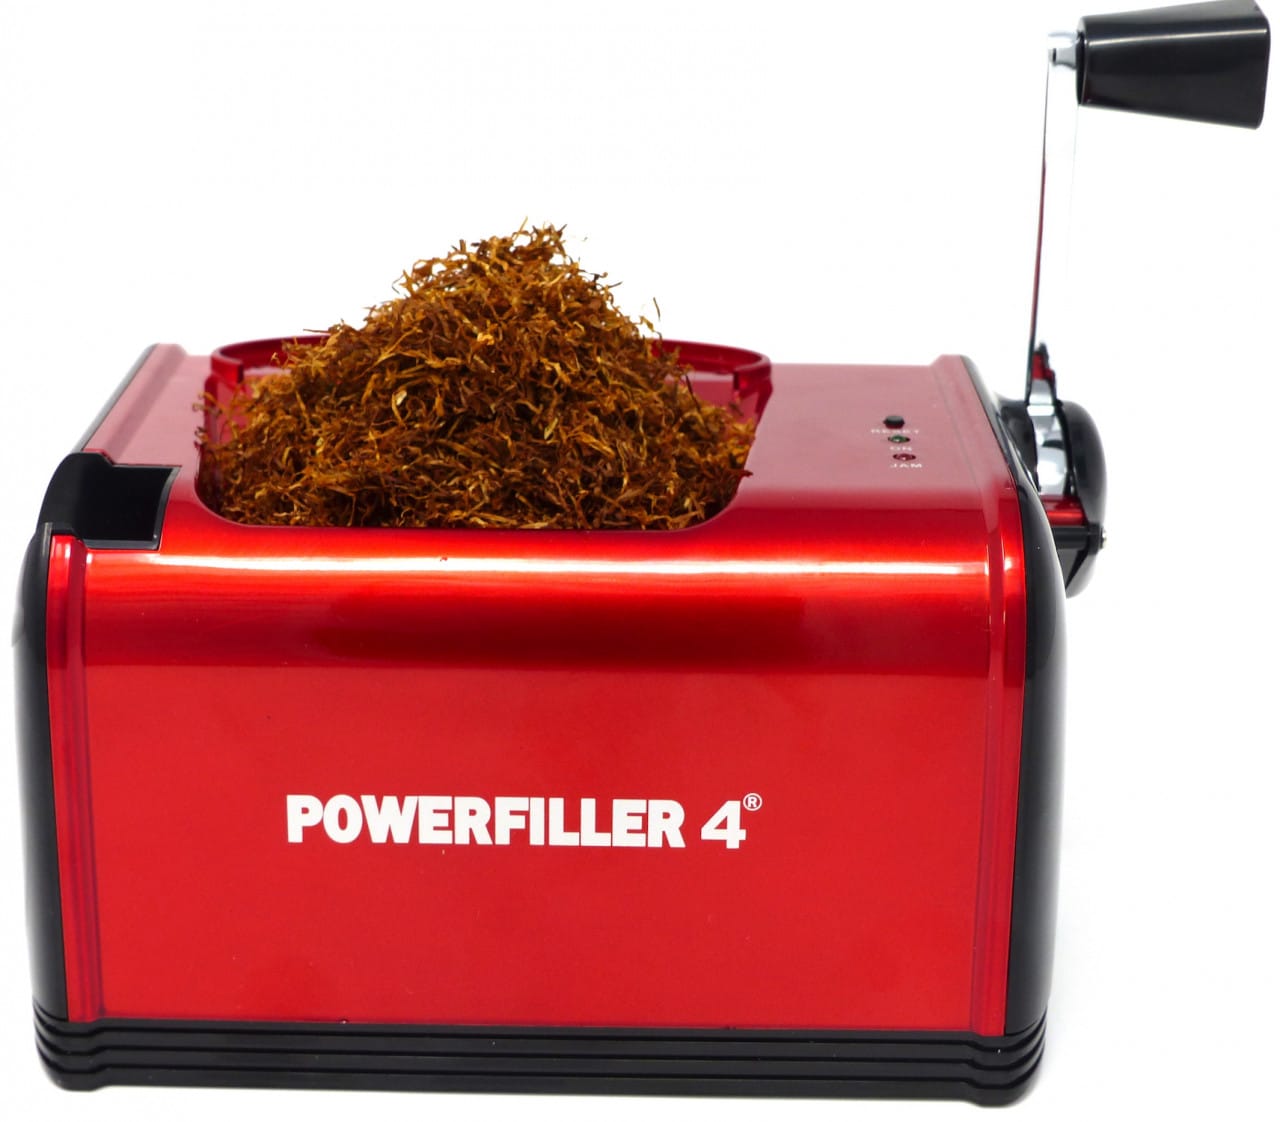 Powerfiller 4 - mit Trichter - elektrische Stopfmaschine - Farbe: rot